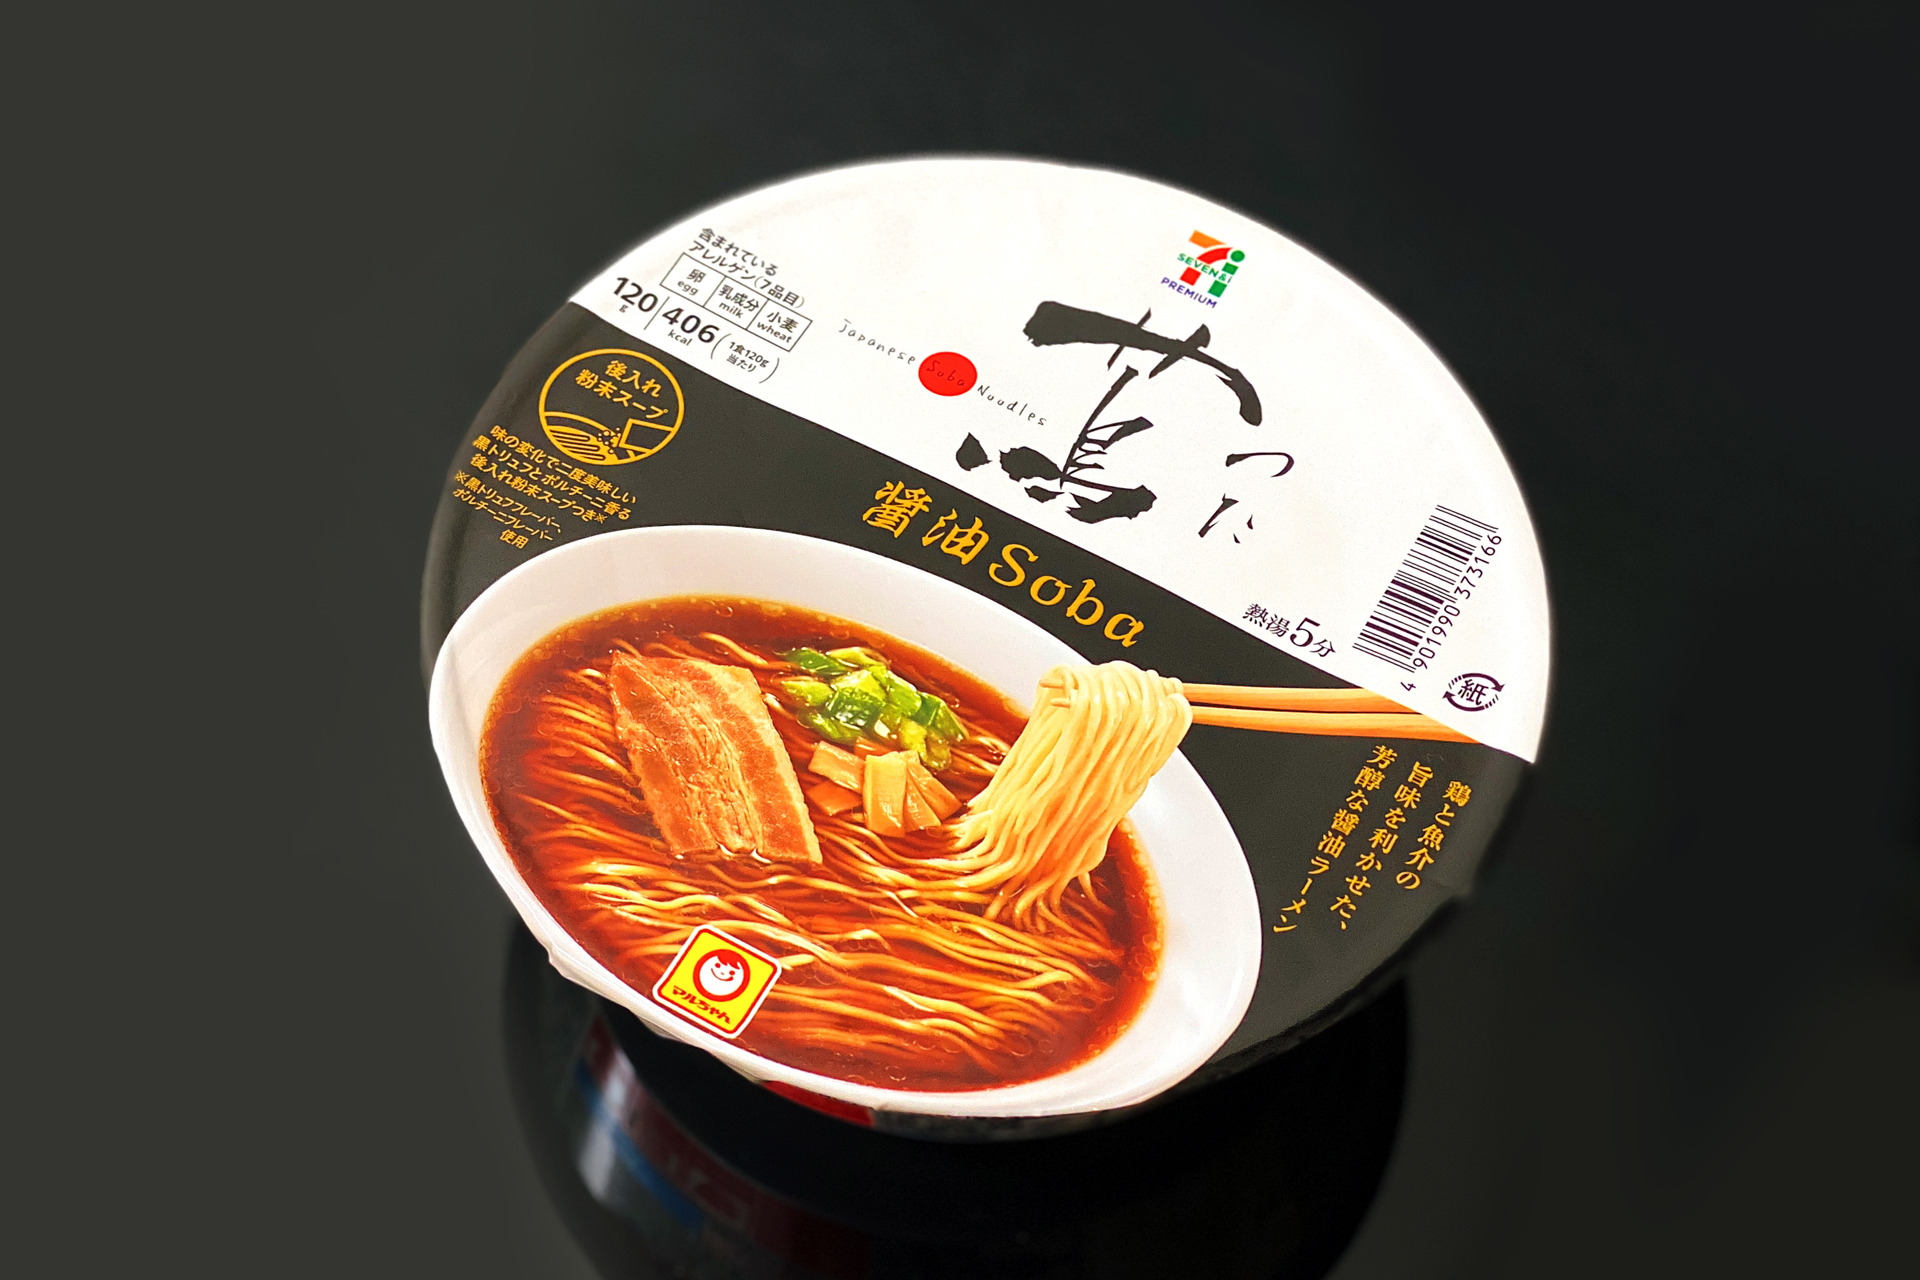 ミシュラン一つ星のラーメン店「Japanese Soba Noodles 蔦」の「醤油Soba」を再現したカップ麺、リニューアル発売 セブンプレミアム  蔦 醤油Soba - グルメ Watch